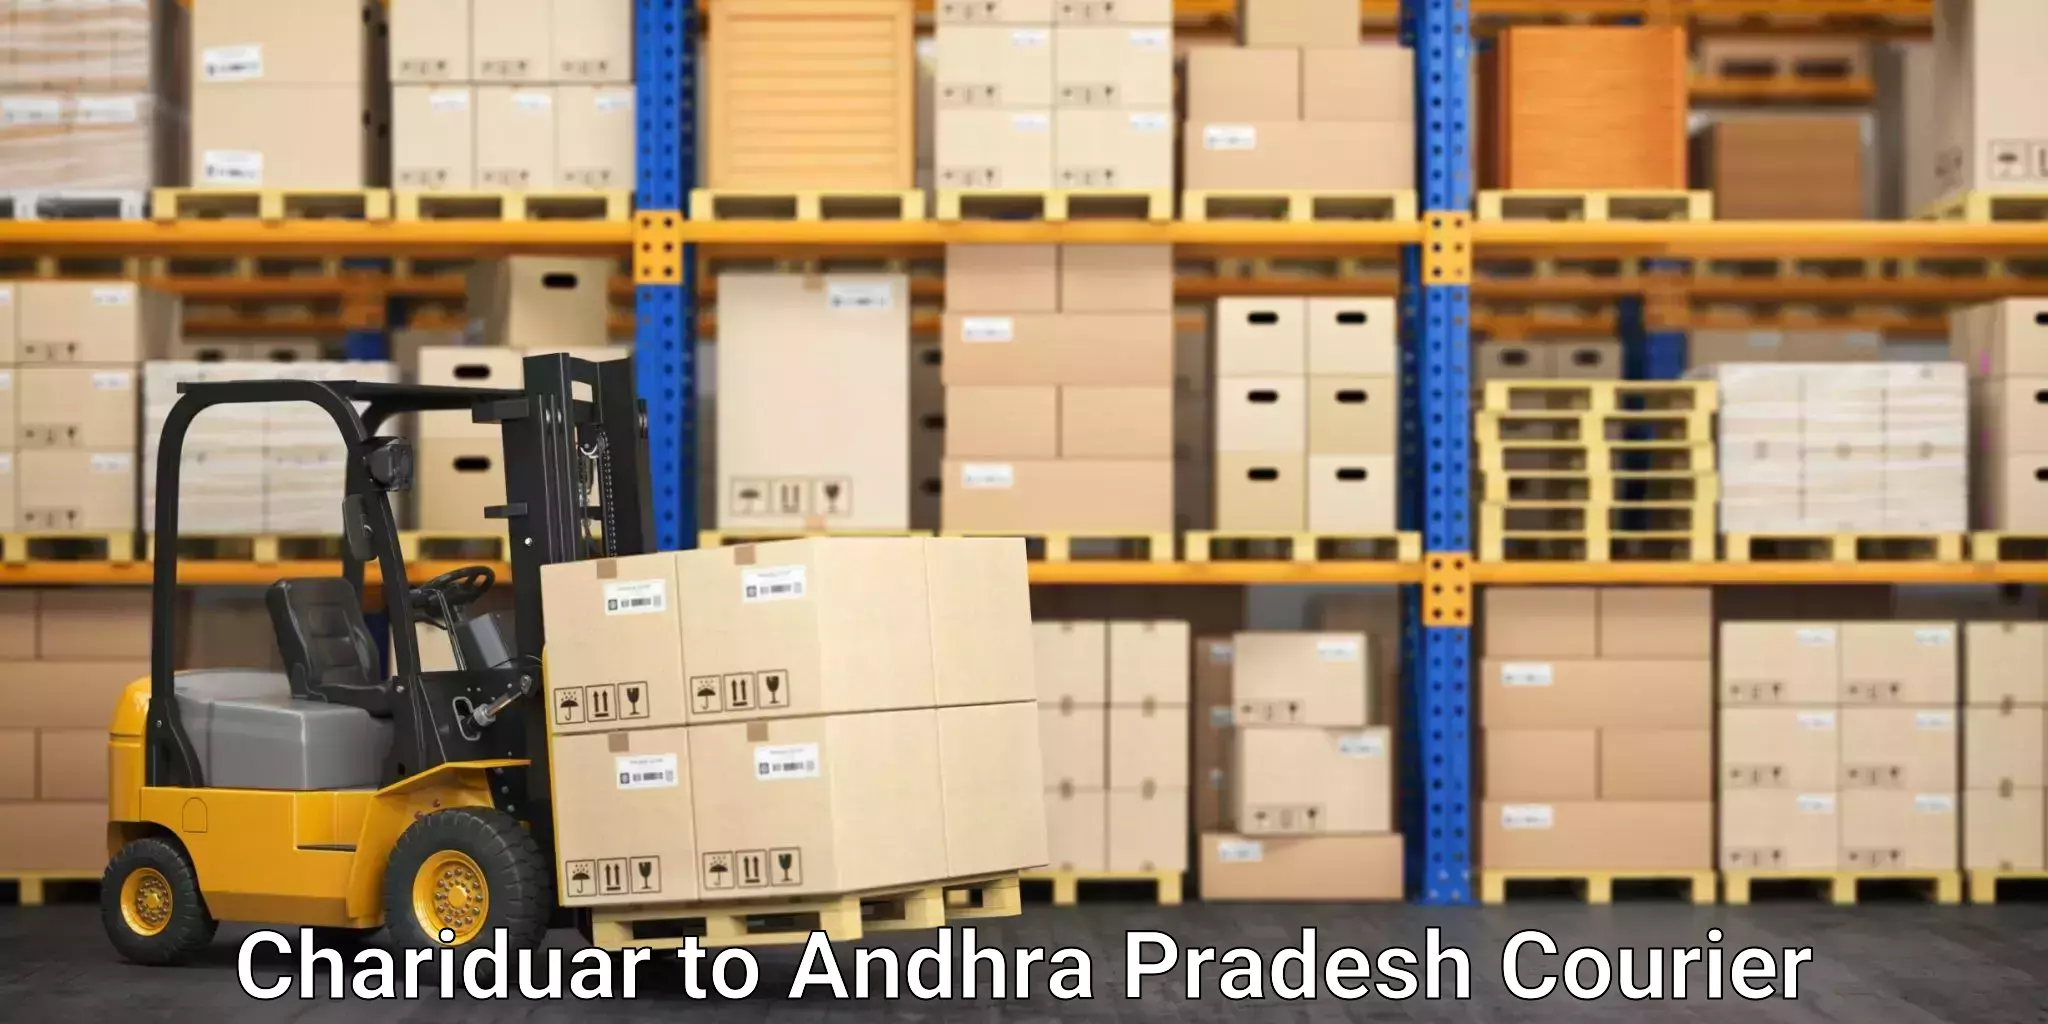 Cargo courier service Chariduar to Andhra Pradesh